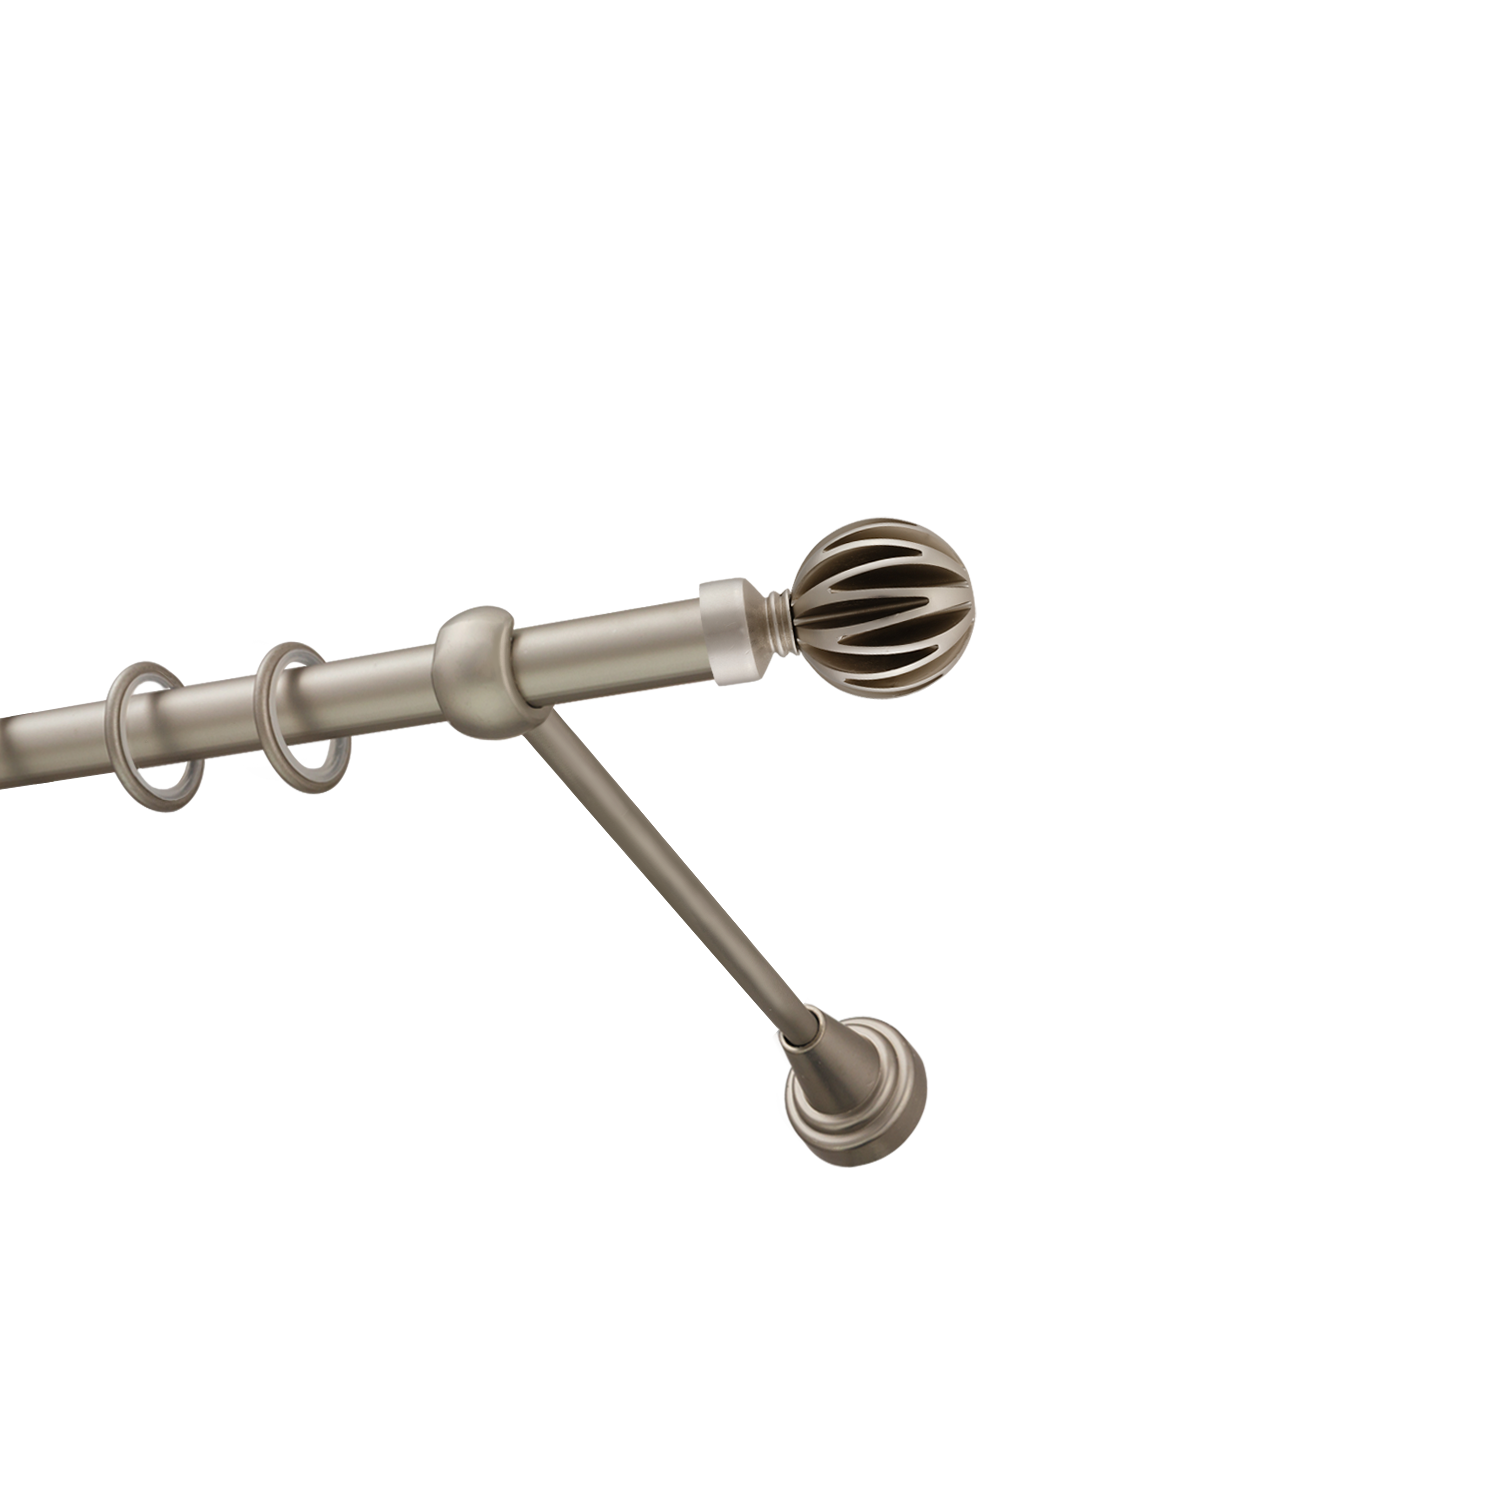 Металлический карниз для штор Шафран, однорядный 16 мм, сталь, гладкая штанга, длина 140 см - фото Wikidecor.ru